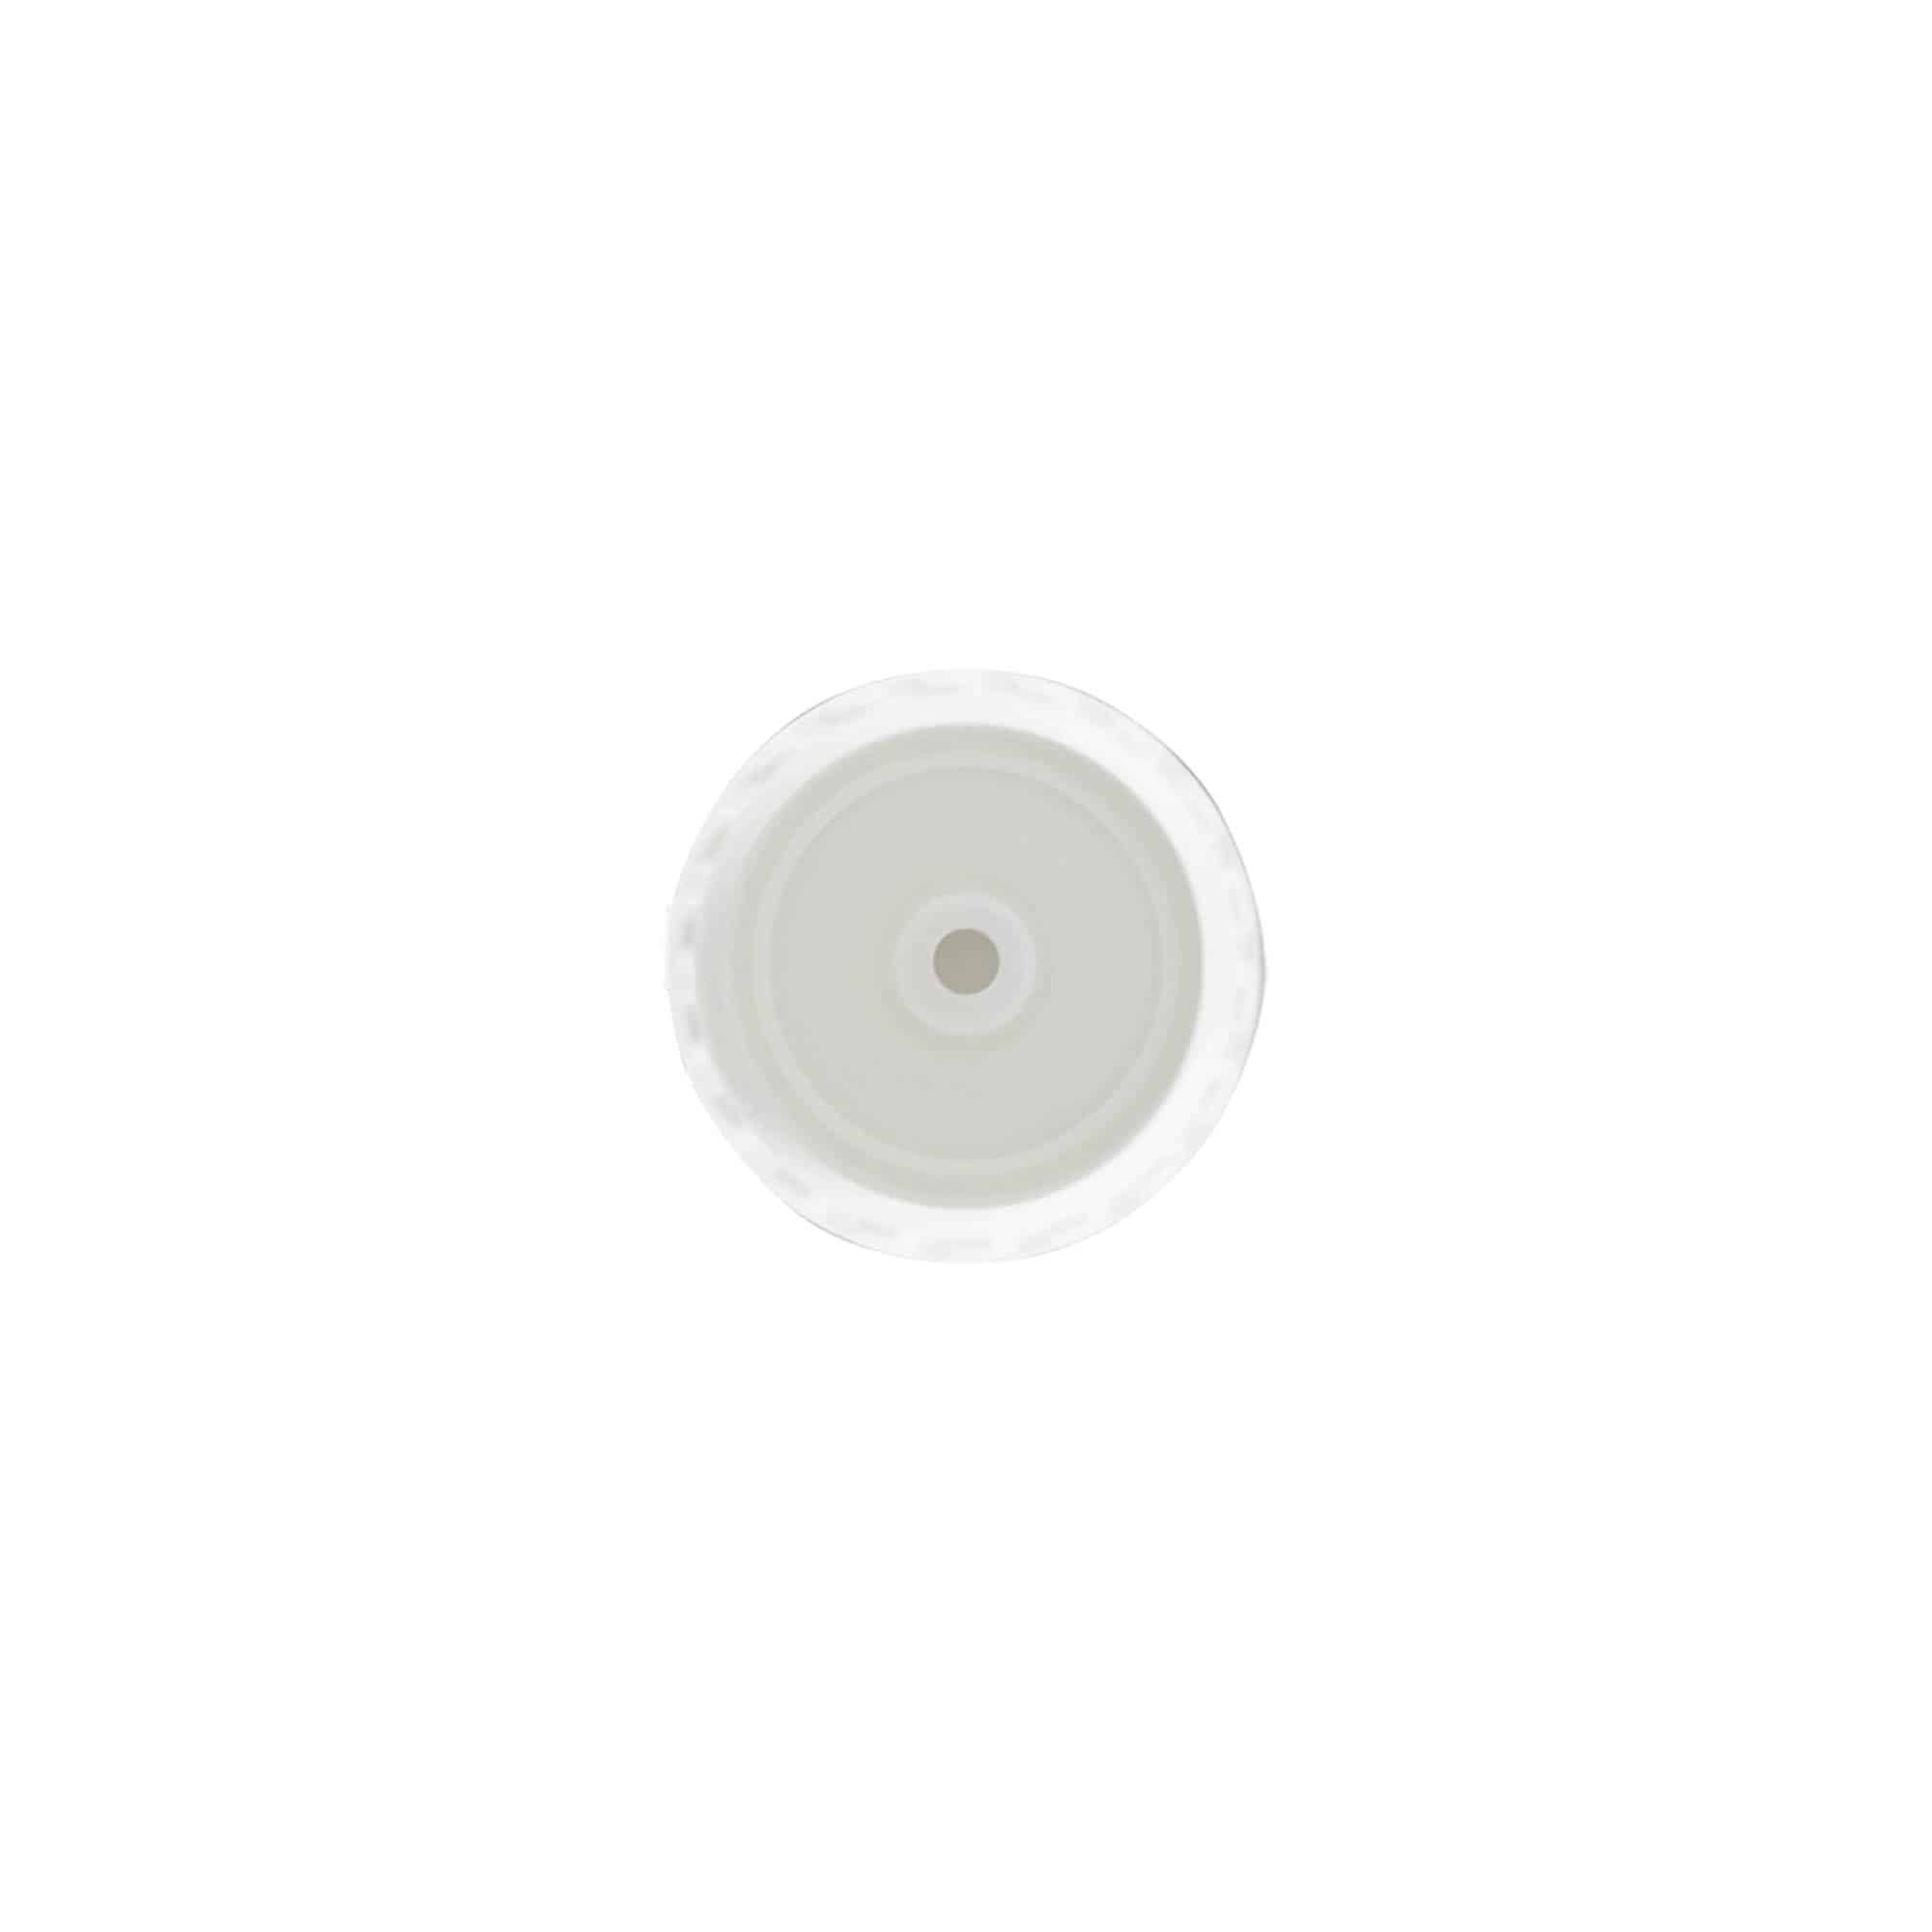 Schraubverschluss Klappscharnier, PP-Kunststoff, weiß, für Mündung: GPI 24/410